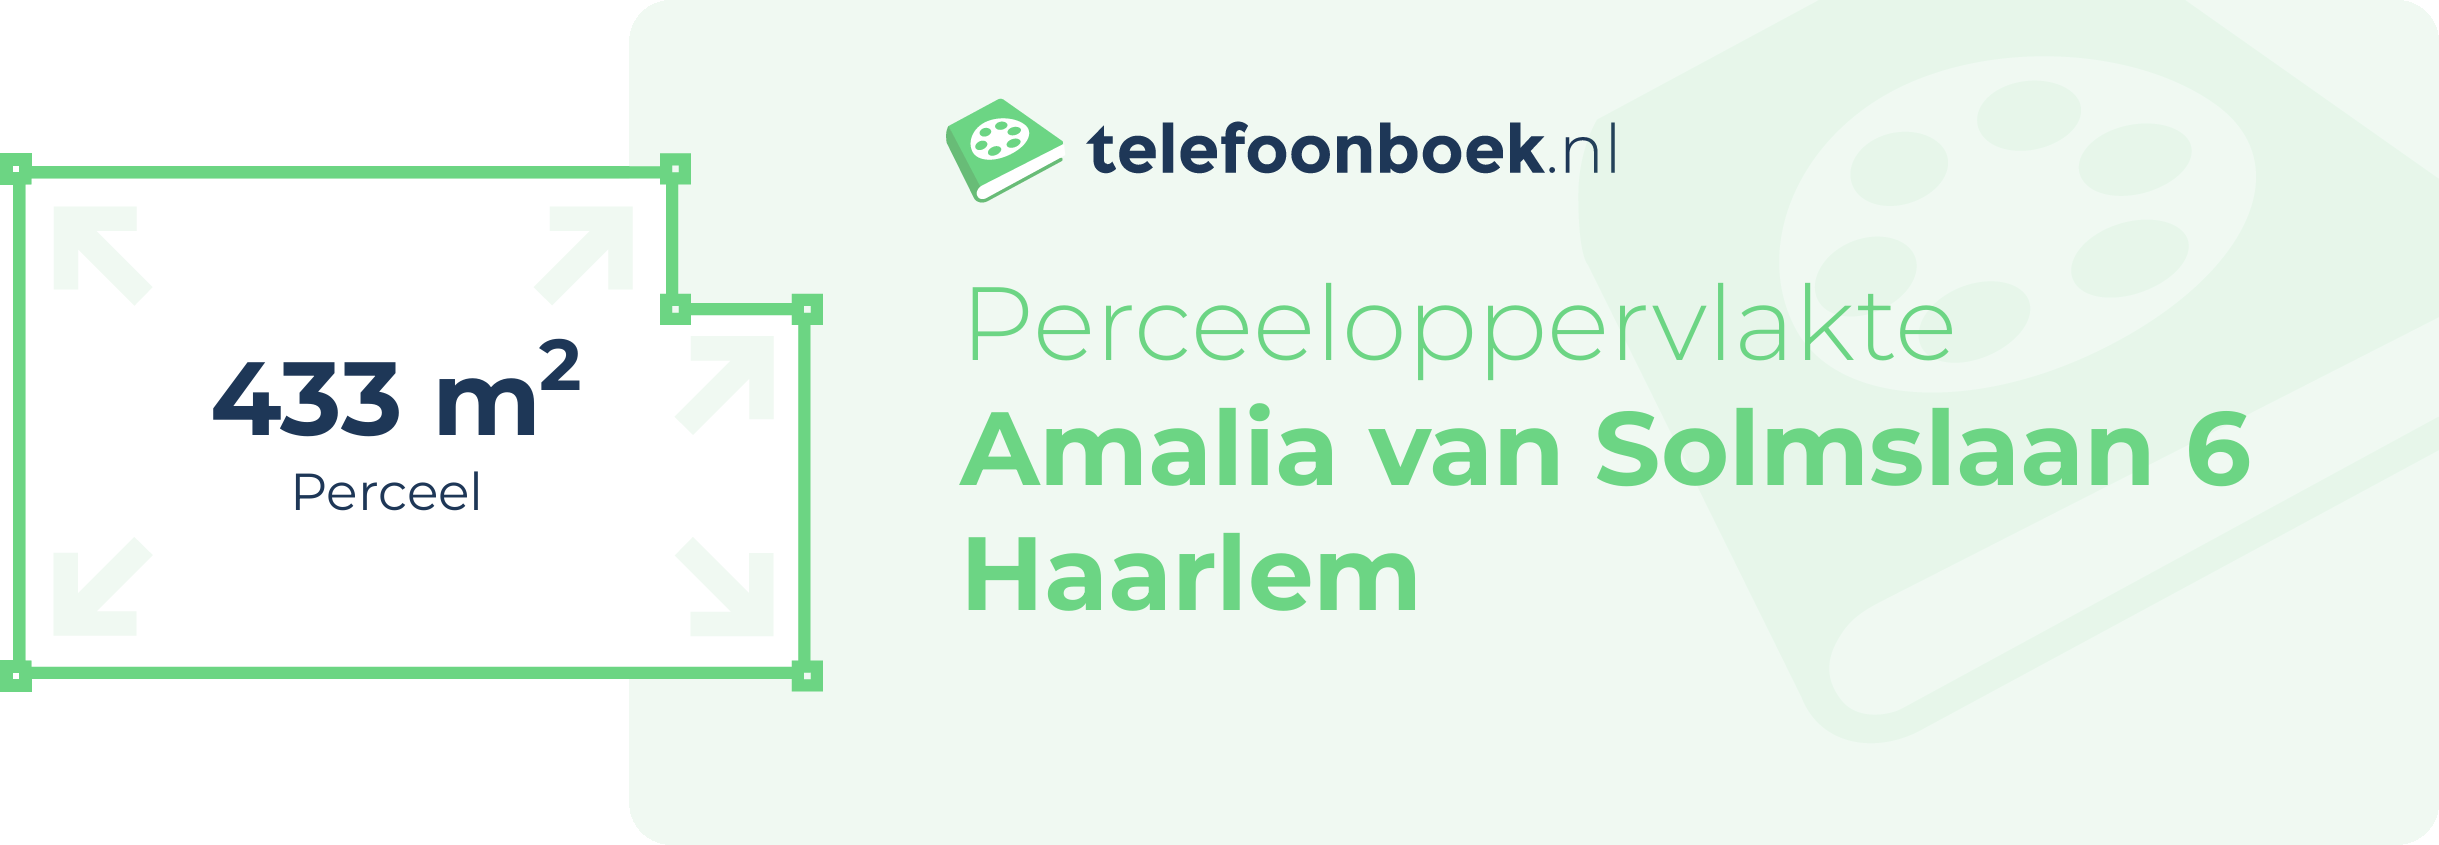 Perceeloppervlakte Amalia Van Solmslaan 6 Haarlem